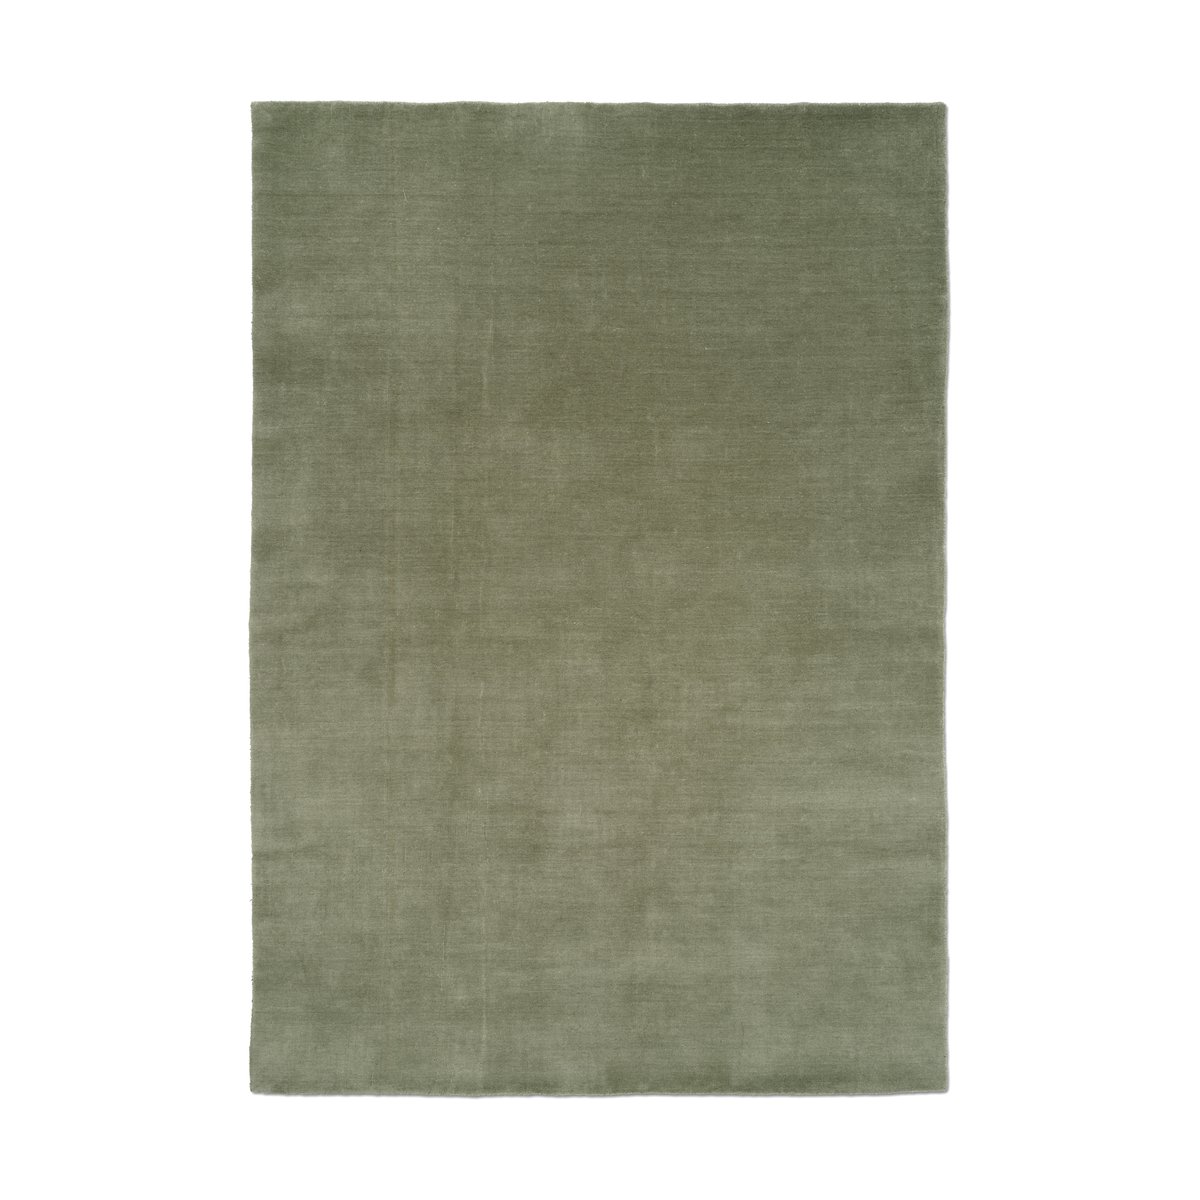 Classic Collection Solid vloerkleed Groen, 170x230 cm